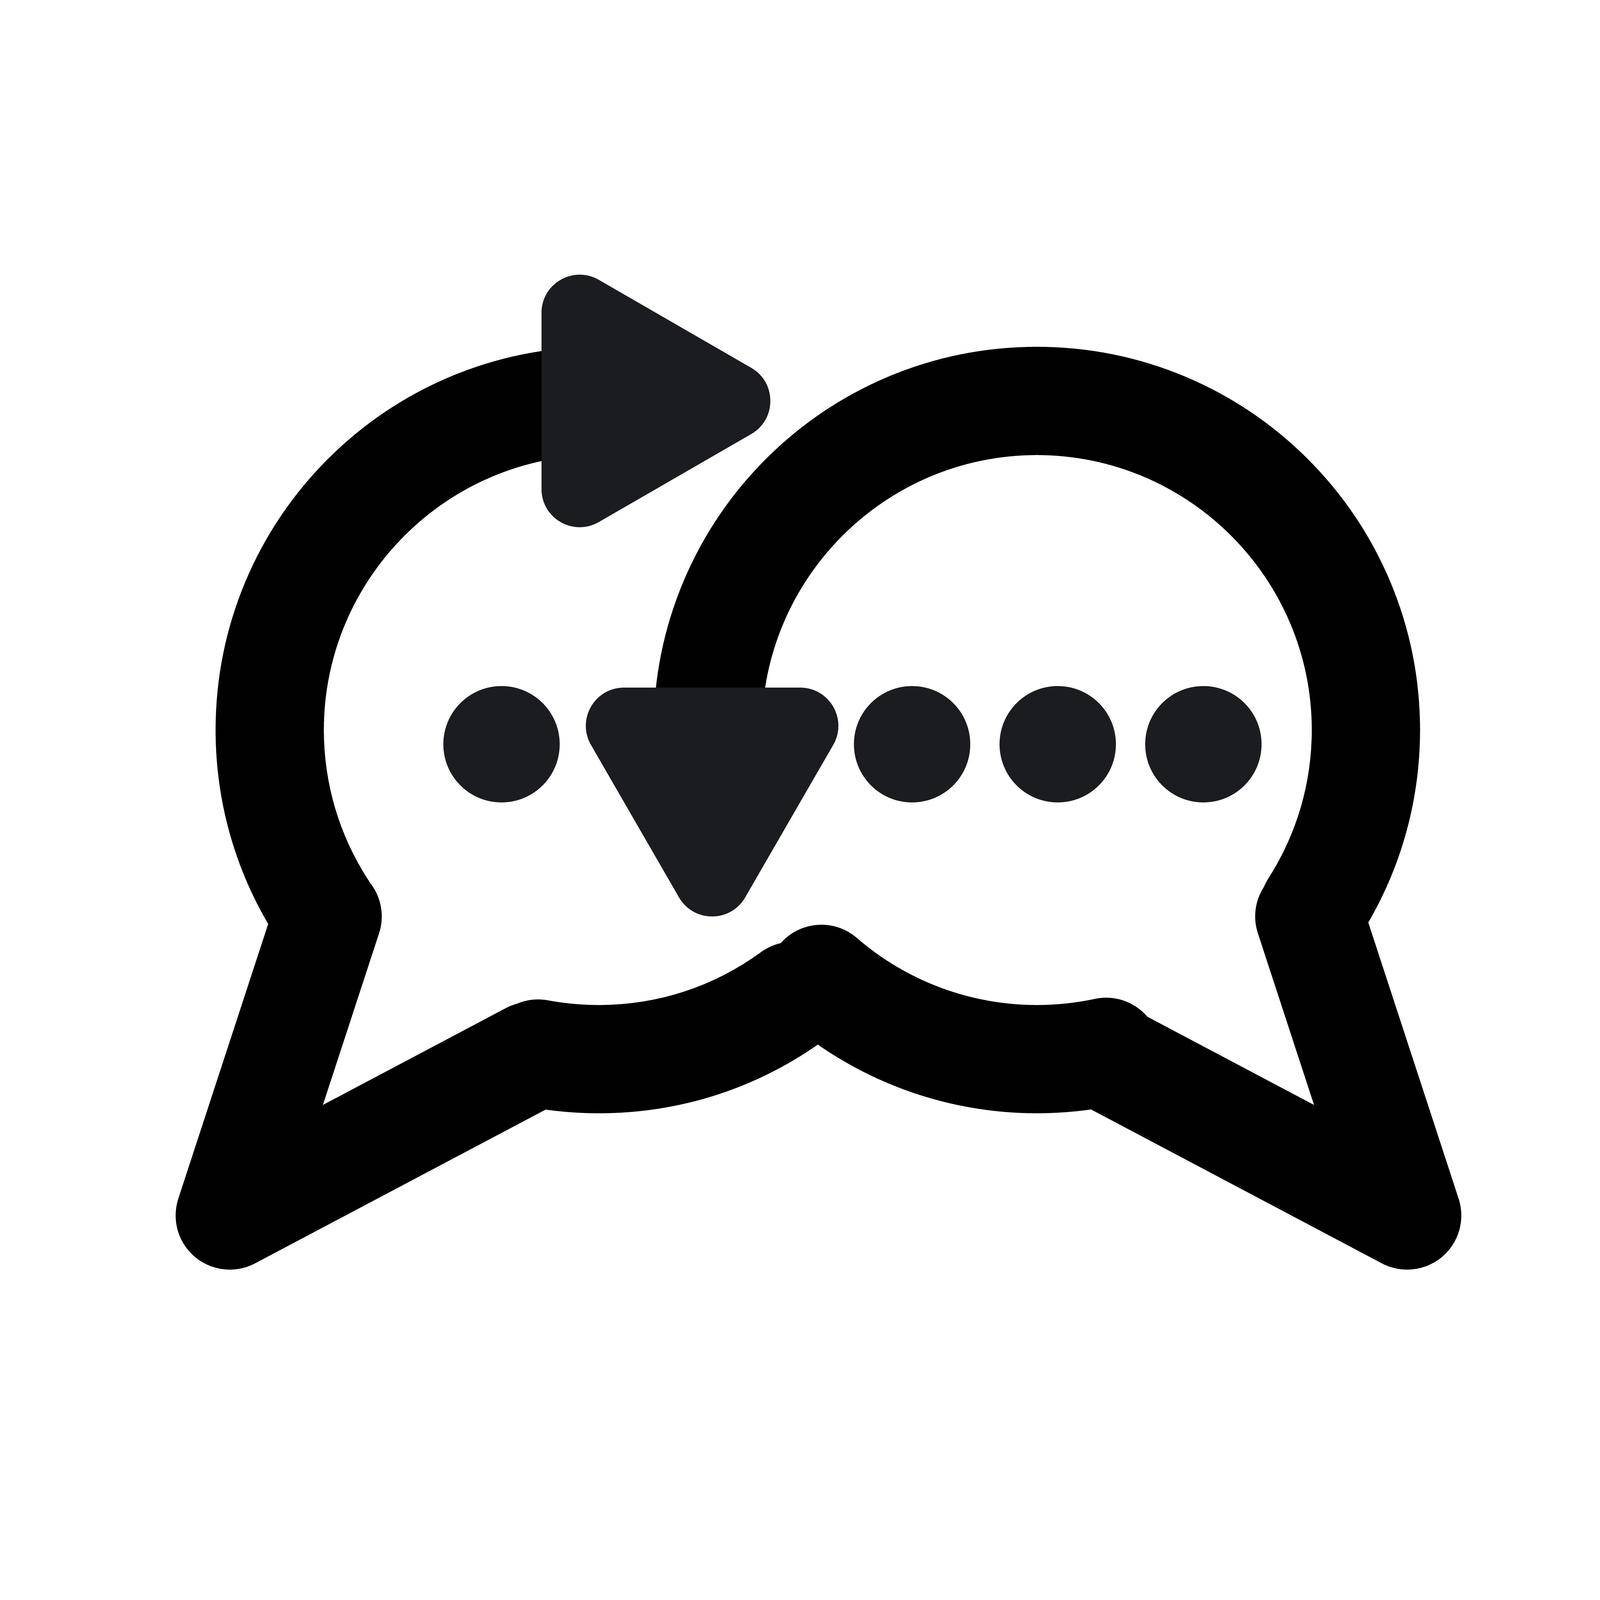 black outline illustration of a chat sign and emblem